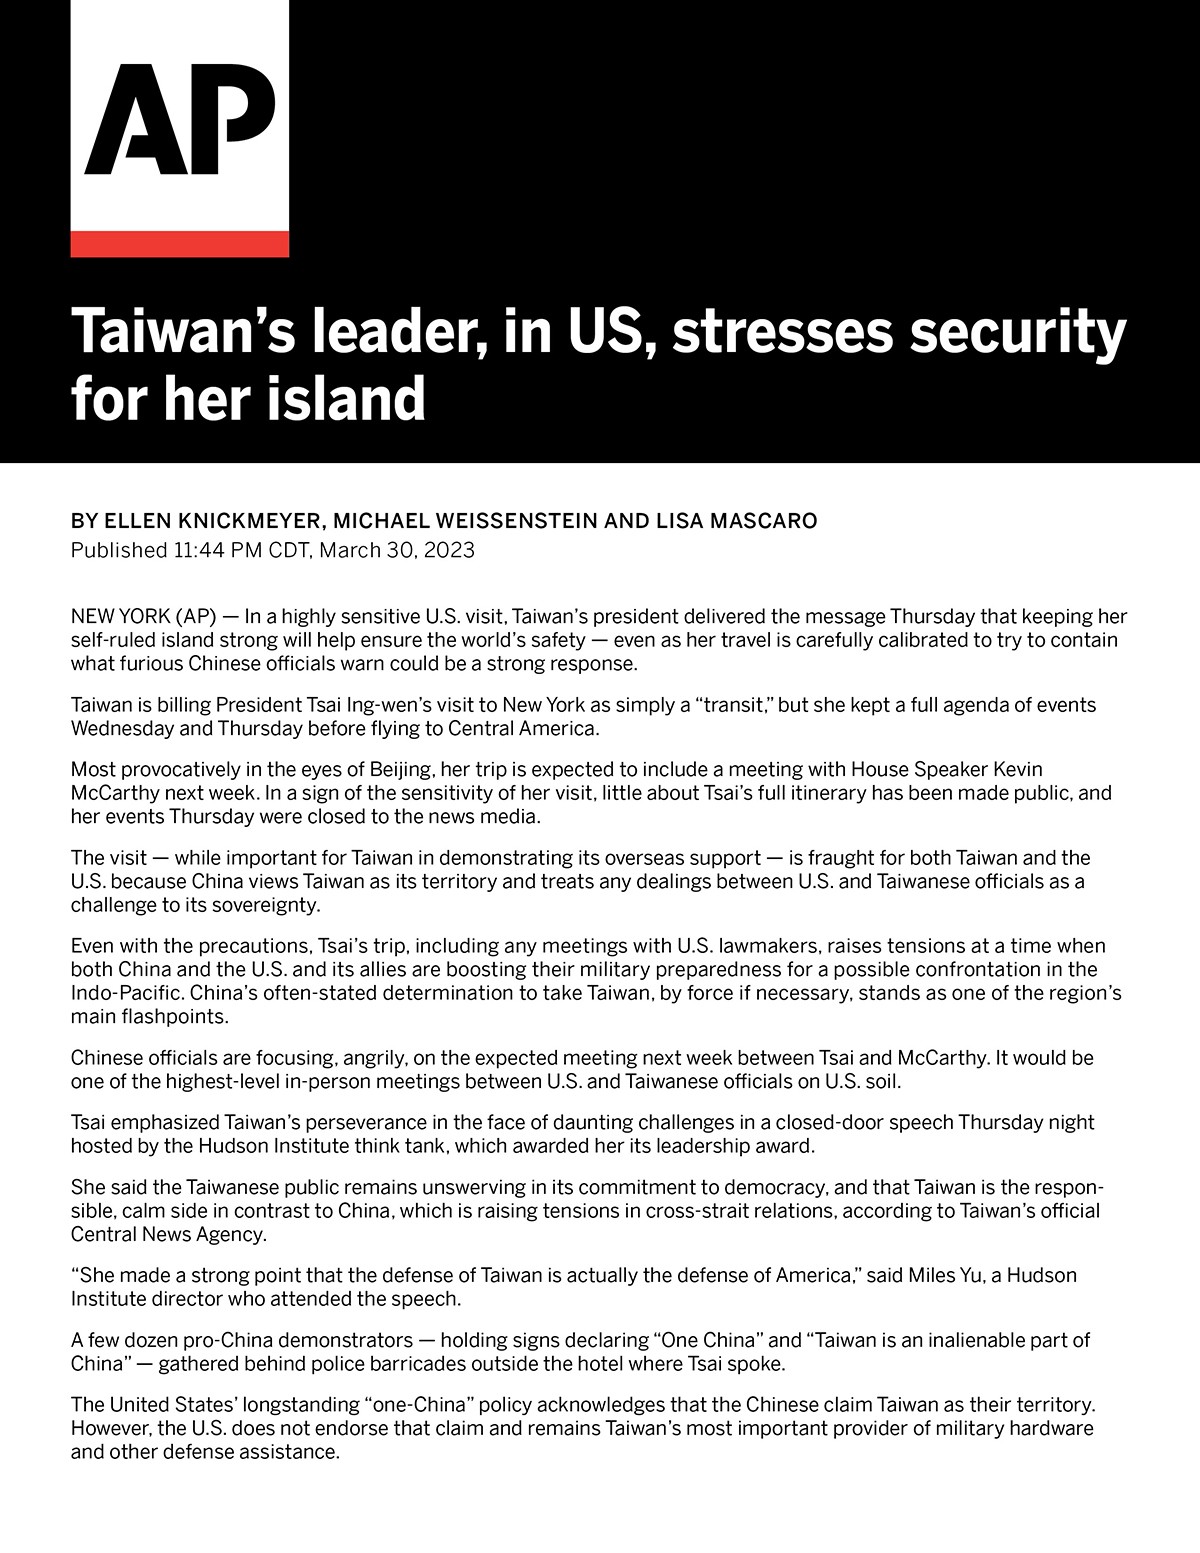 蔡英文總統在美強調維護臺灣安全